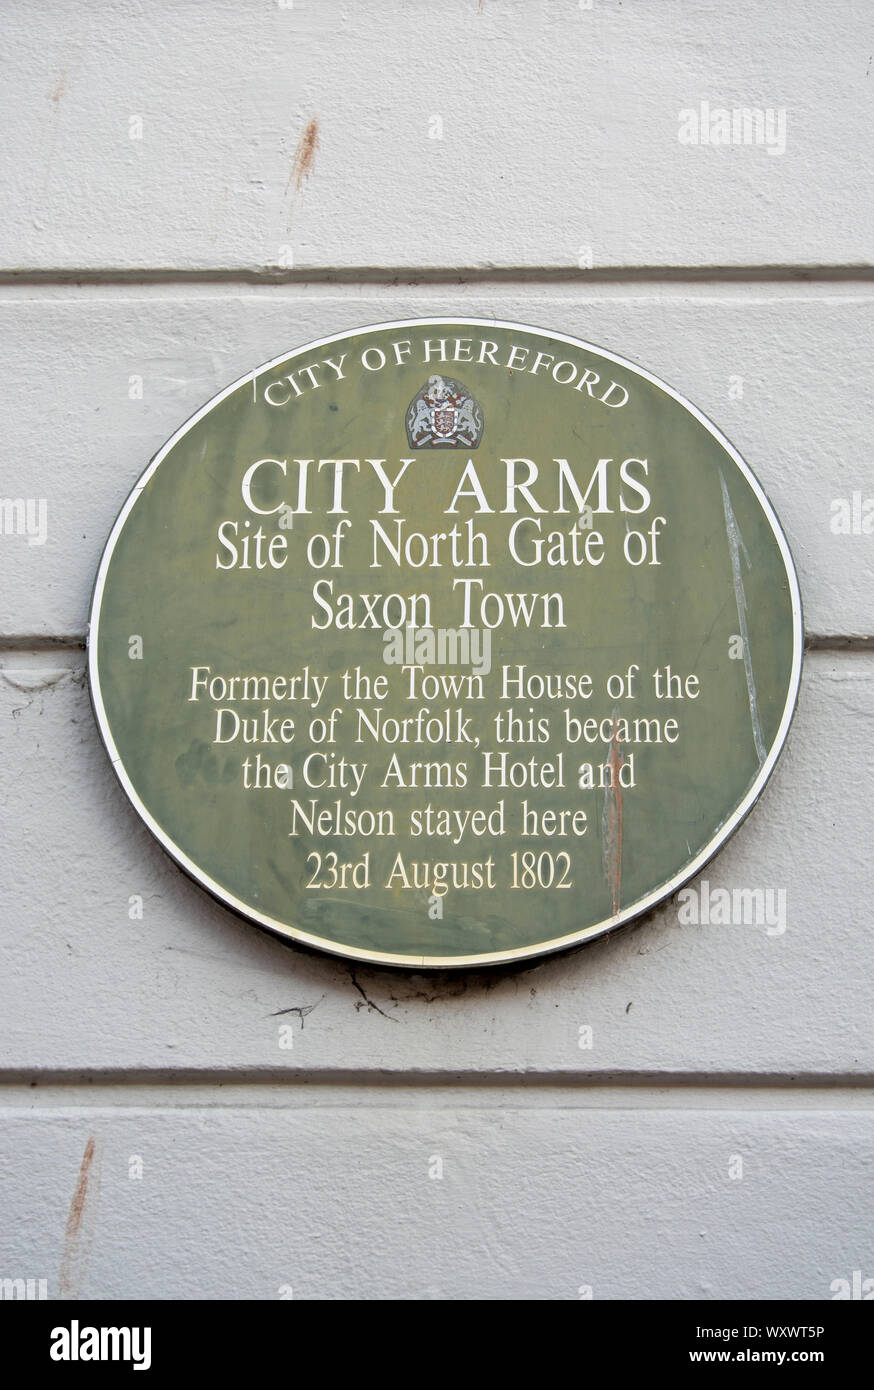 Stadt Hereford Plakette Kennzeichnung Stadtwappen, der North Gate der sächsischen Stadt, jetzt ein Hotel einmal in 1802 von Lord Nelson belegt Stockfoto